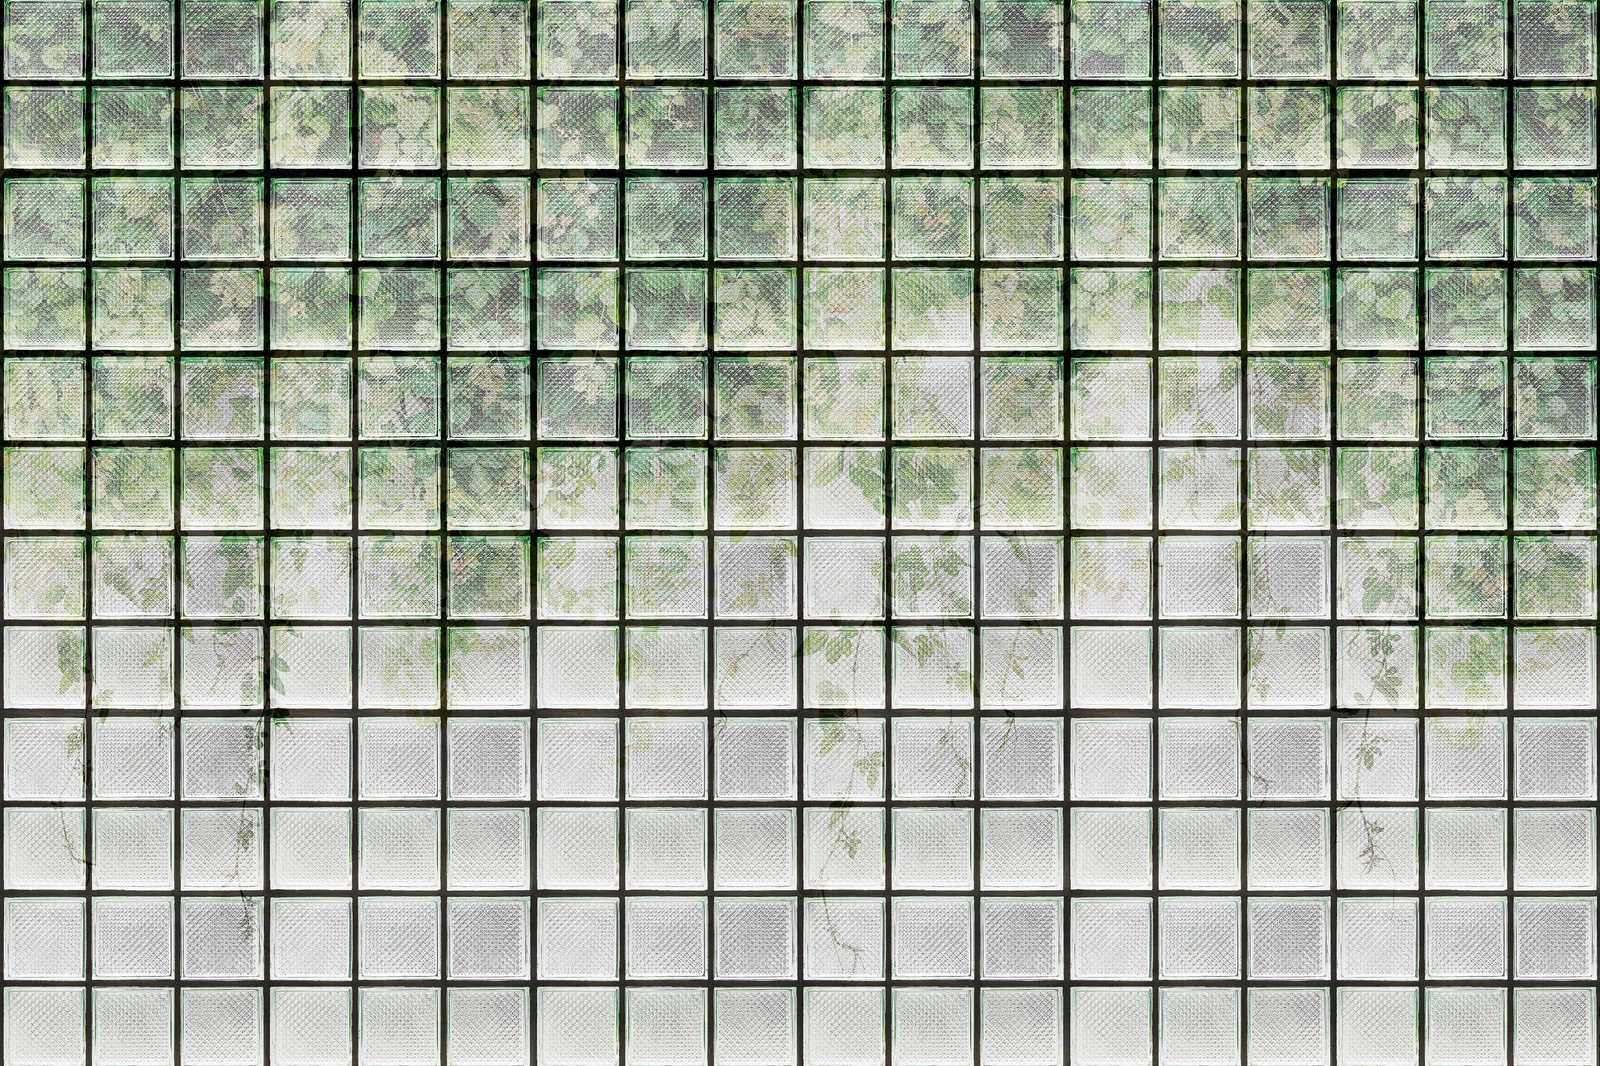             Green House 2 - Invernadero Lienzo pintura Hojas y ladrillos de vidrio - 0,90 m x 0,60 m
        